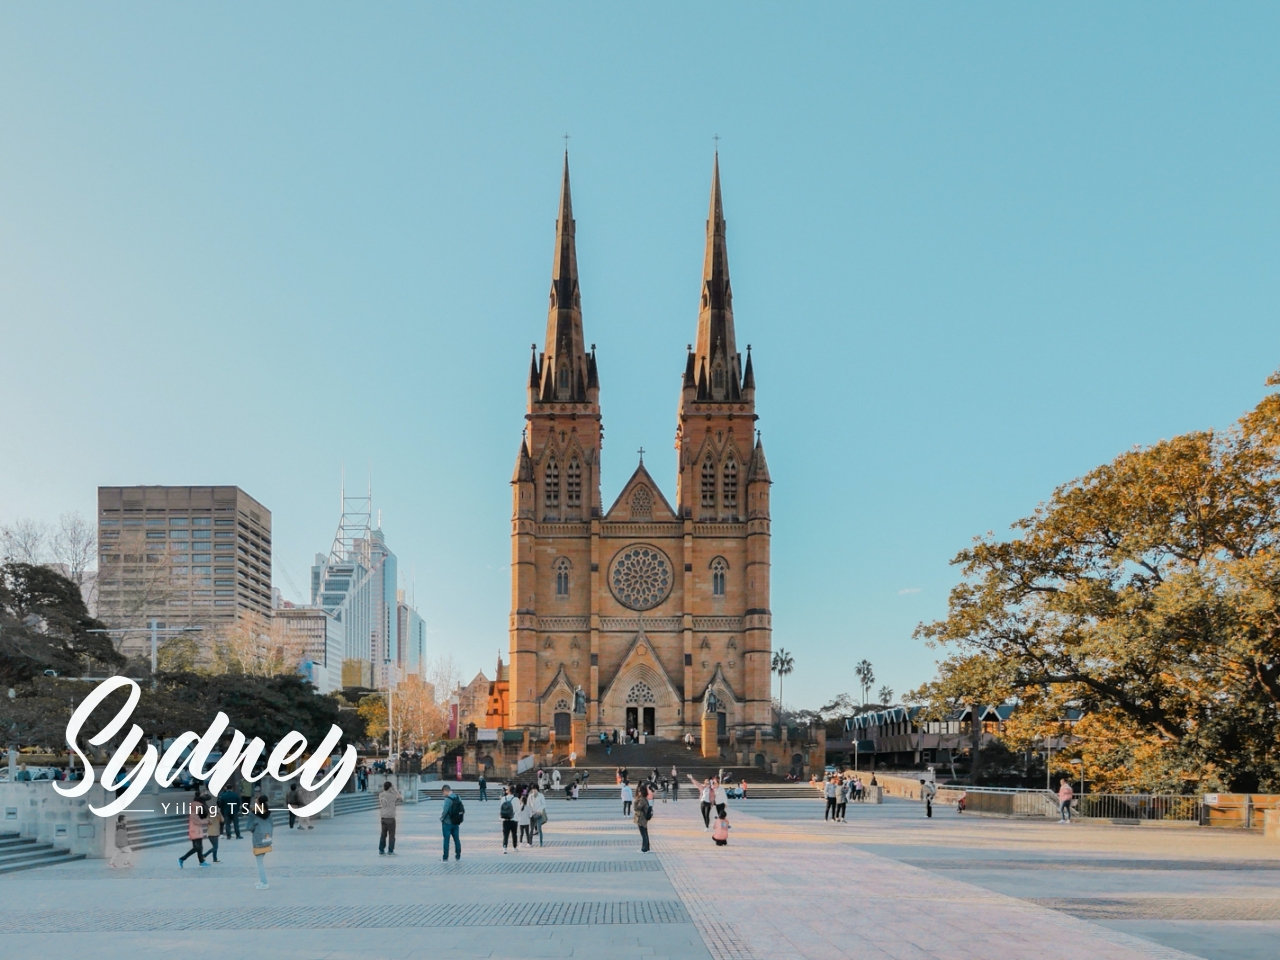 澳洲雪梨景點 聖母主教座堂 St Mary’s Cathedral 澳洲最大教堂